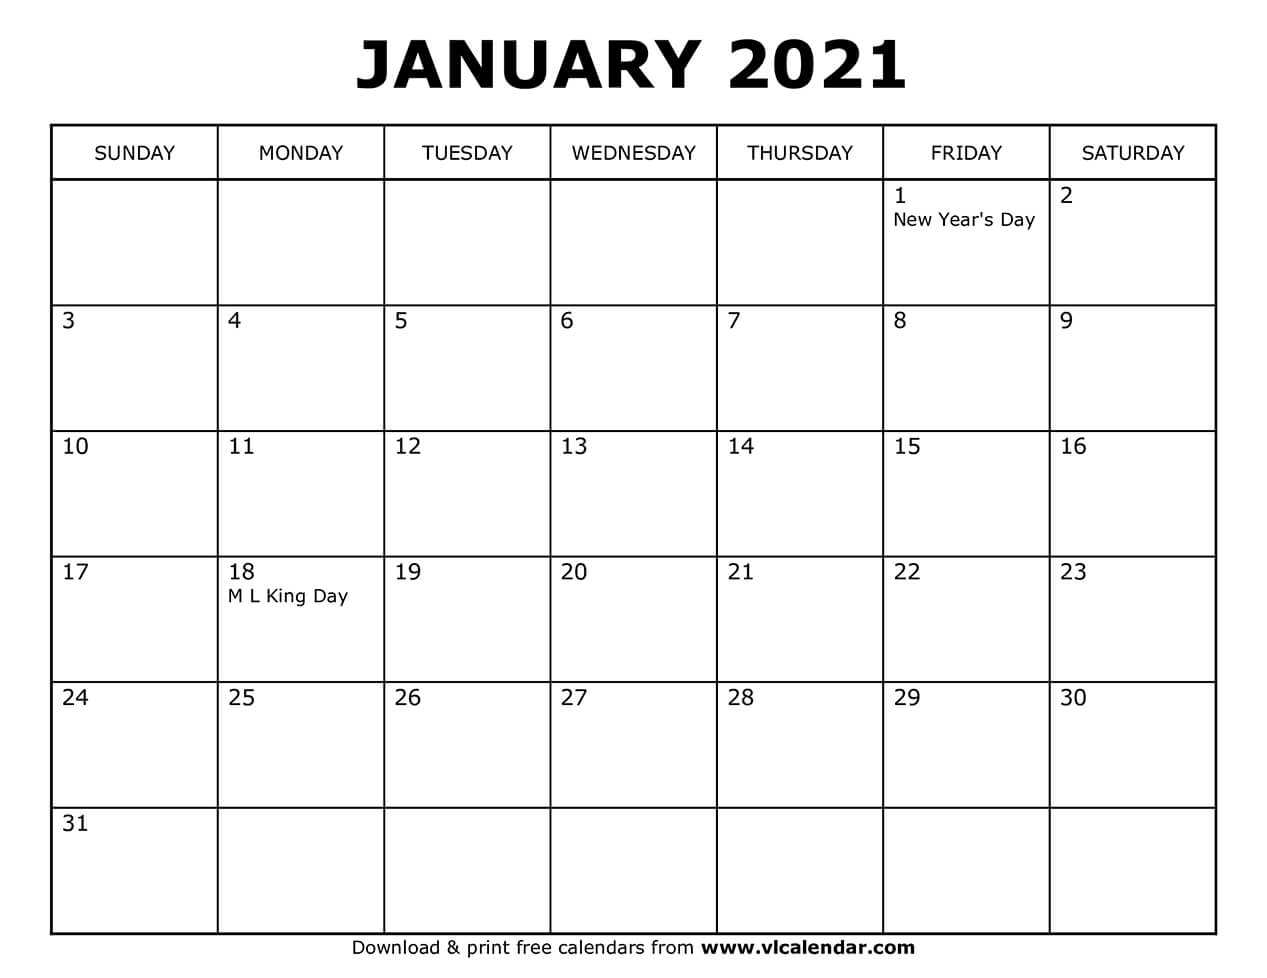 january 20 2021 countdown